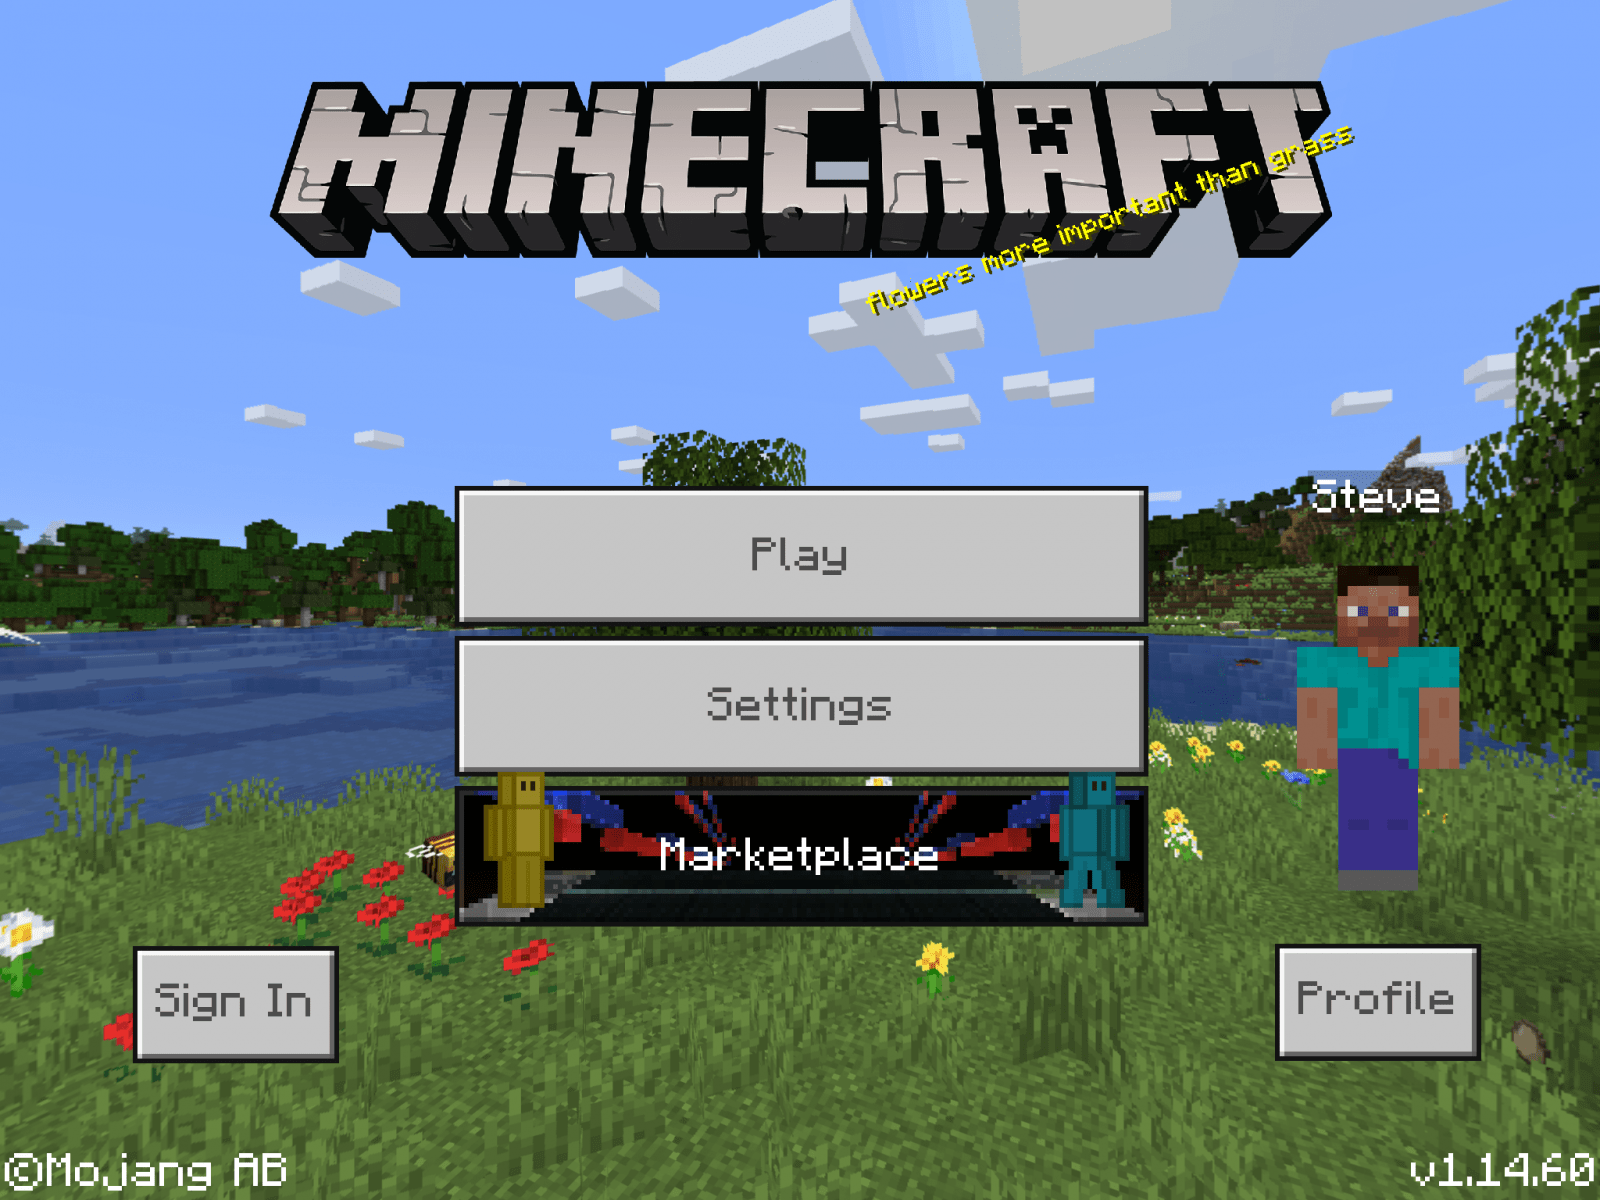 Plug Craft BR - Baixe agora a versão 1.14.30.2 do Minecraft grátis